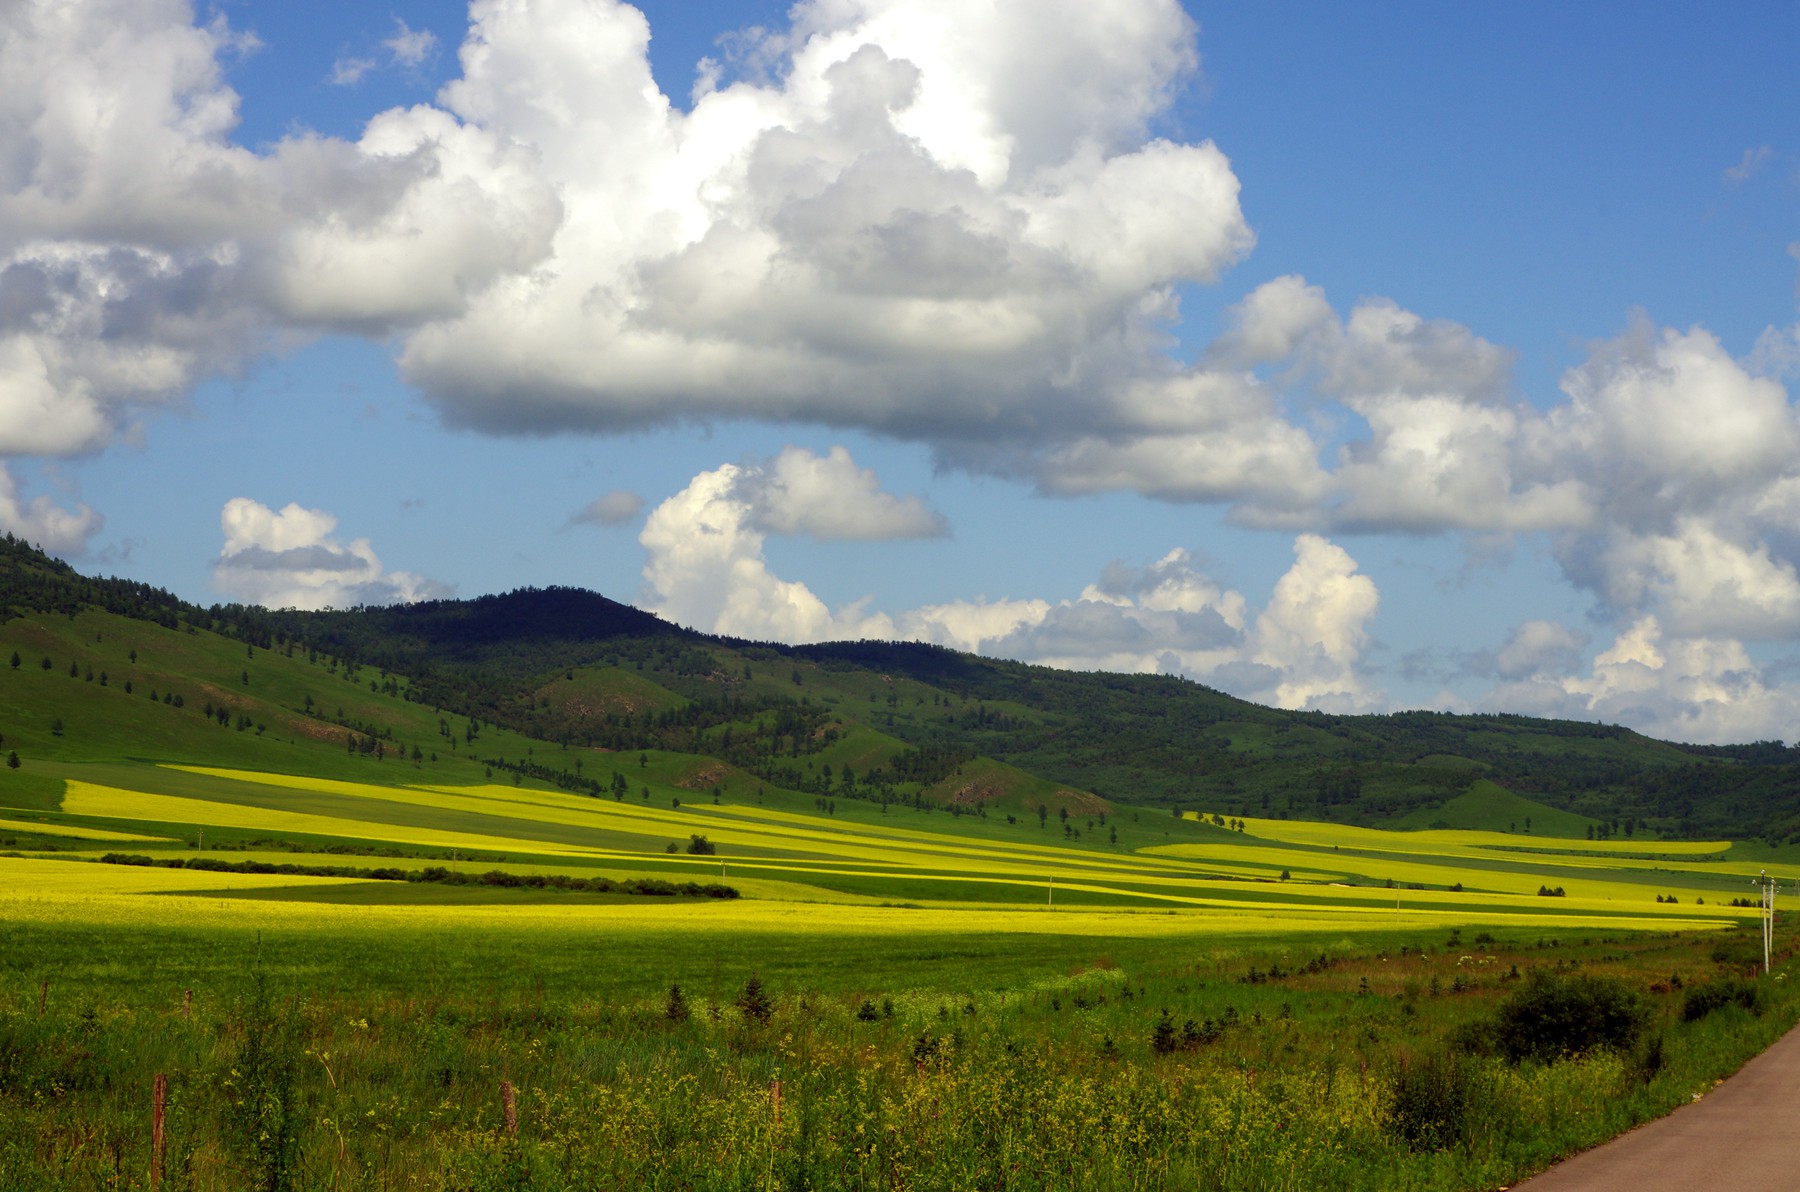 草原的一般印象——湛蓝的天、苍翠的地、洁白的云朵、金黄的油菜花